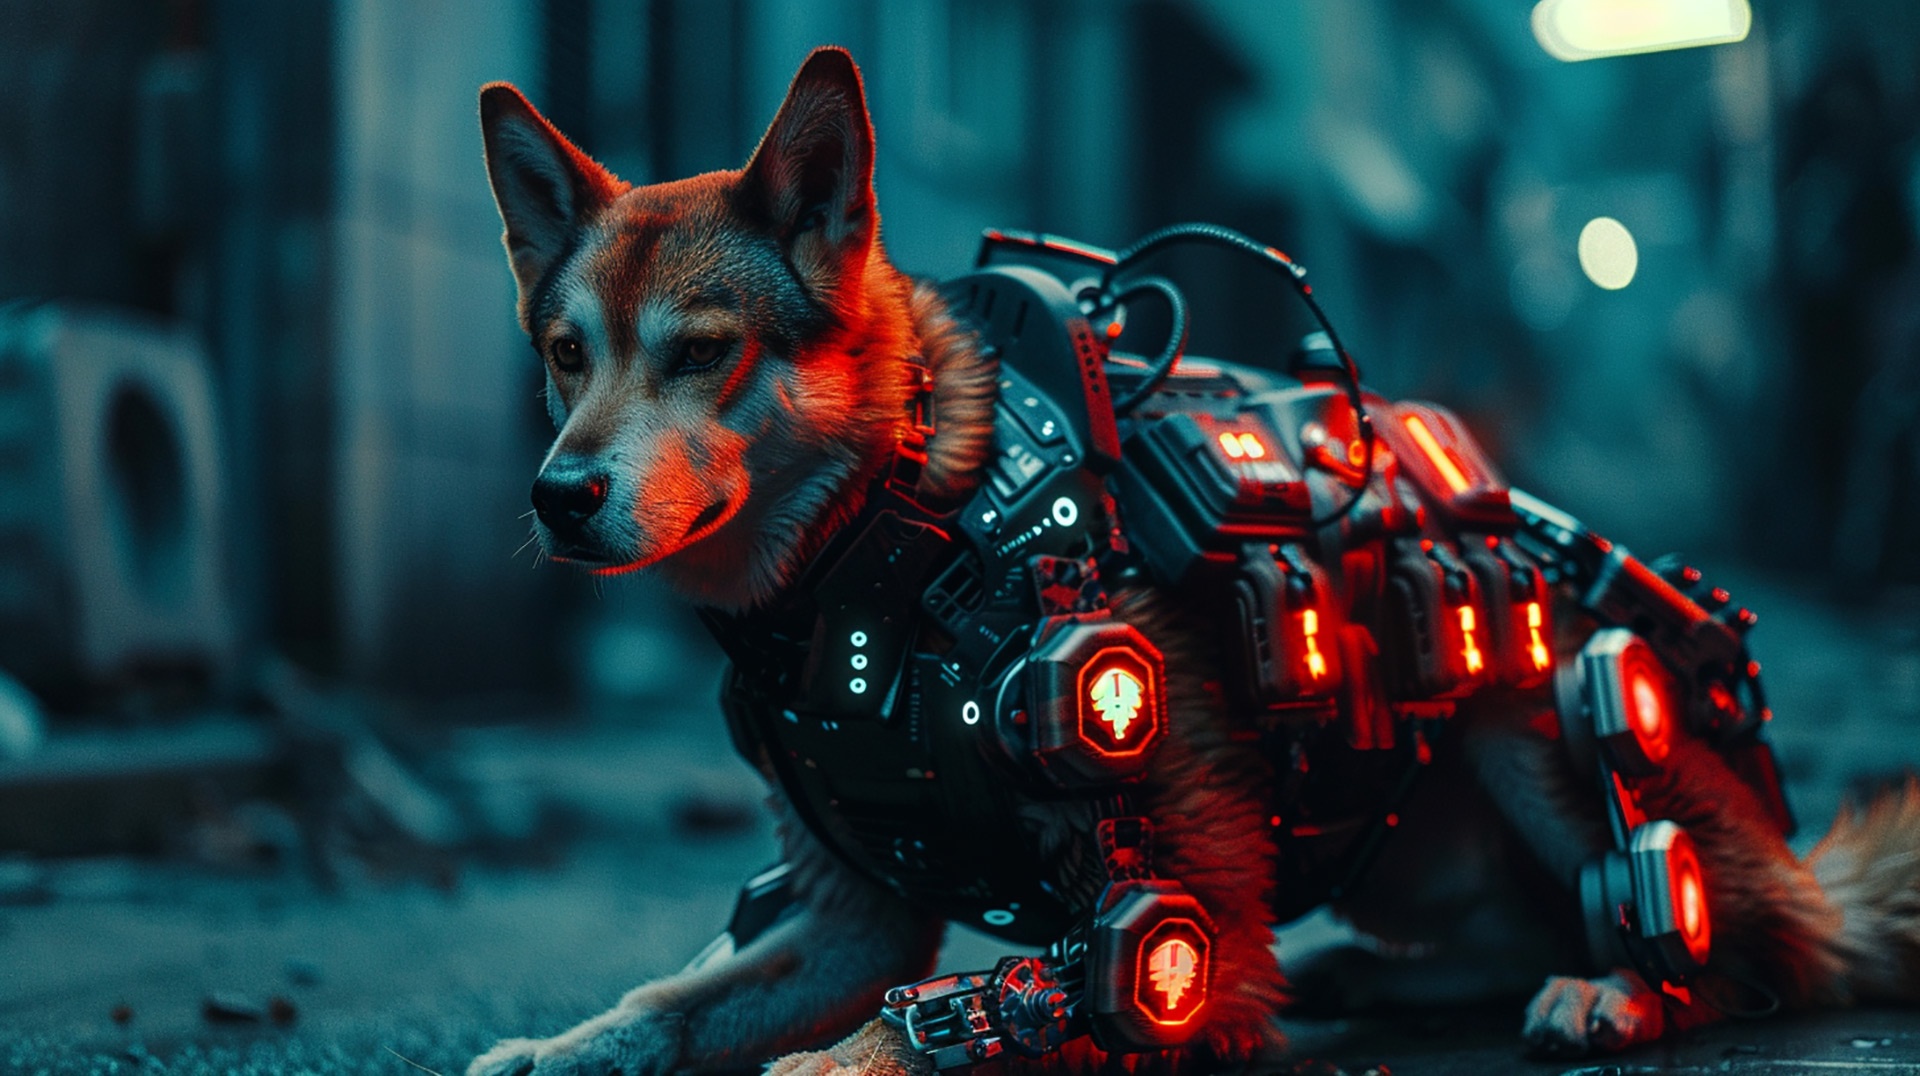 Artistic Cyborg Dog Concepts for Design Aficionados